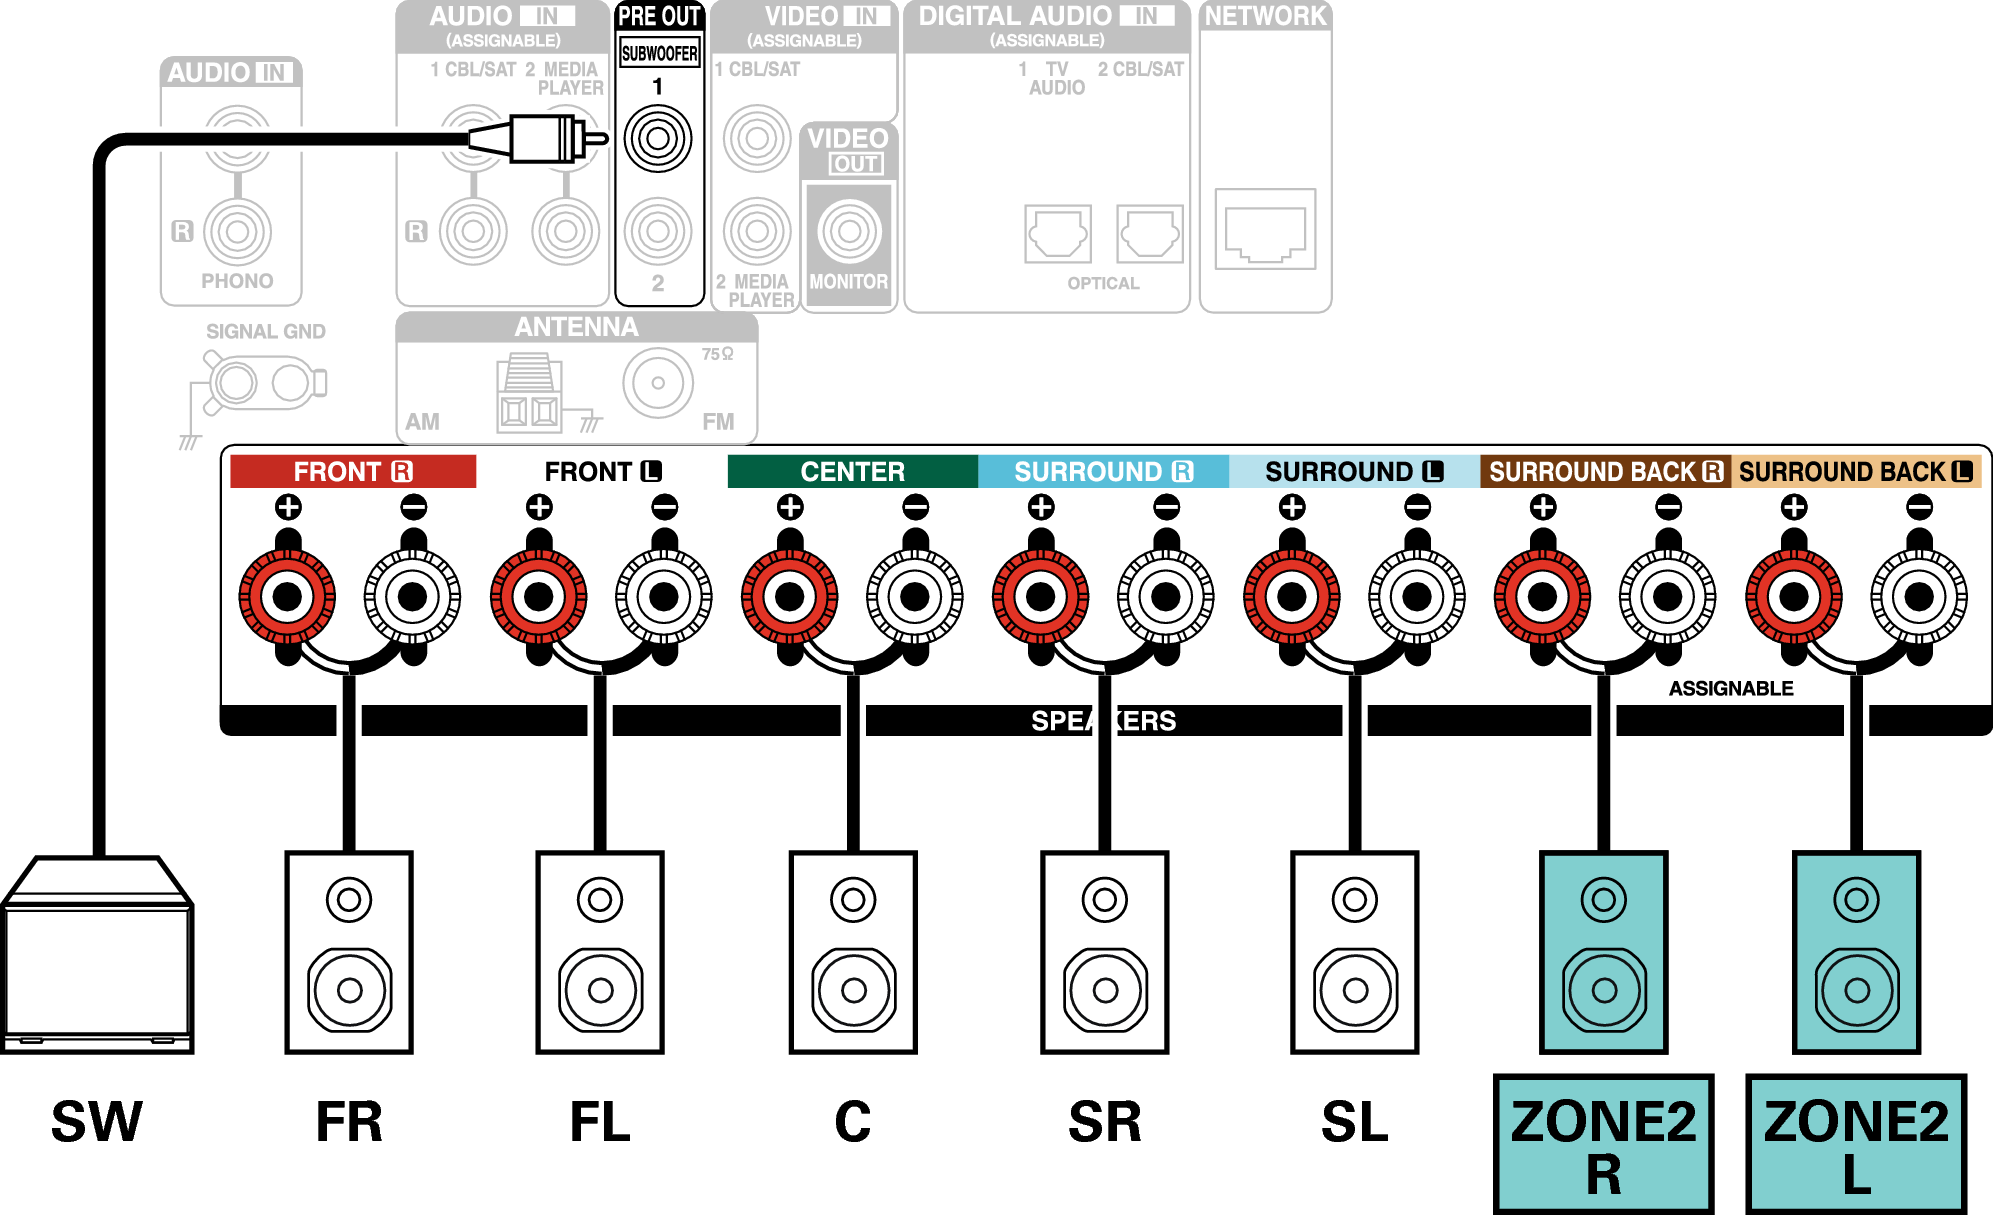 Conne SP 5.1 ZONE2 X15E2